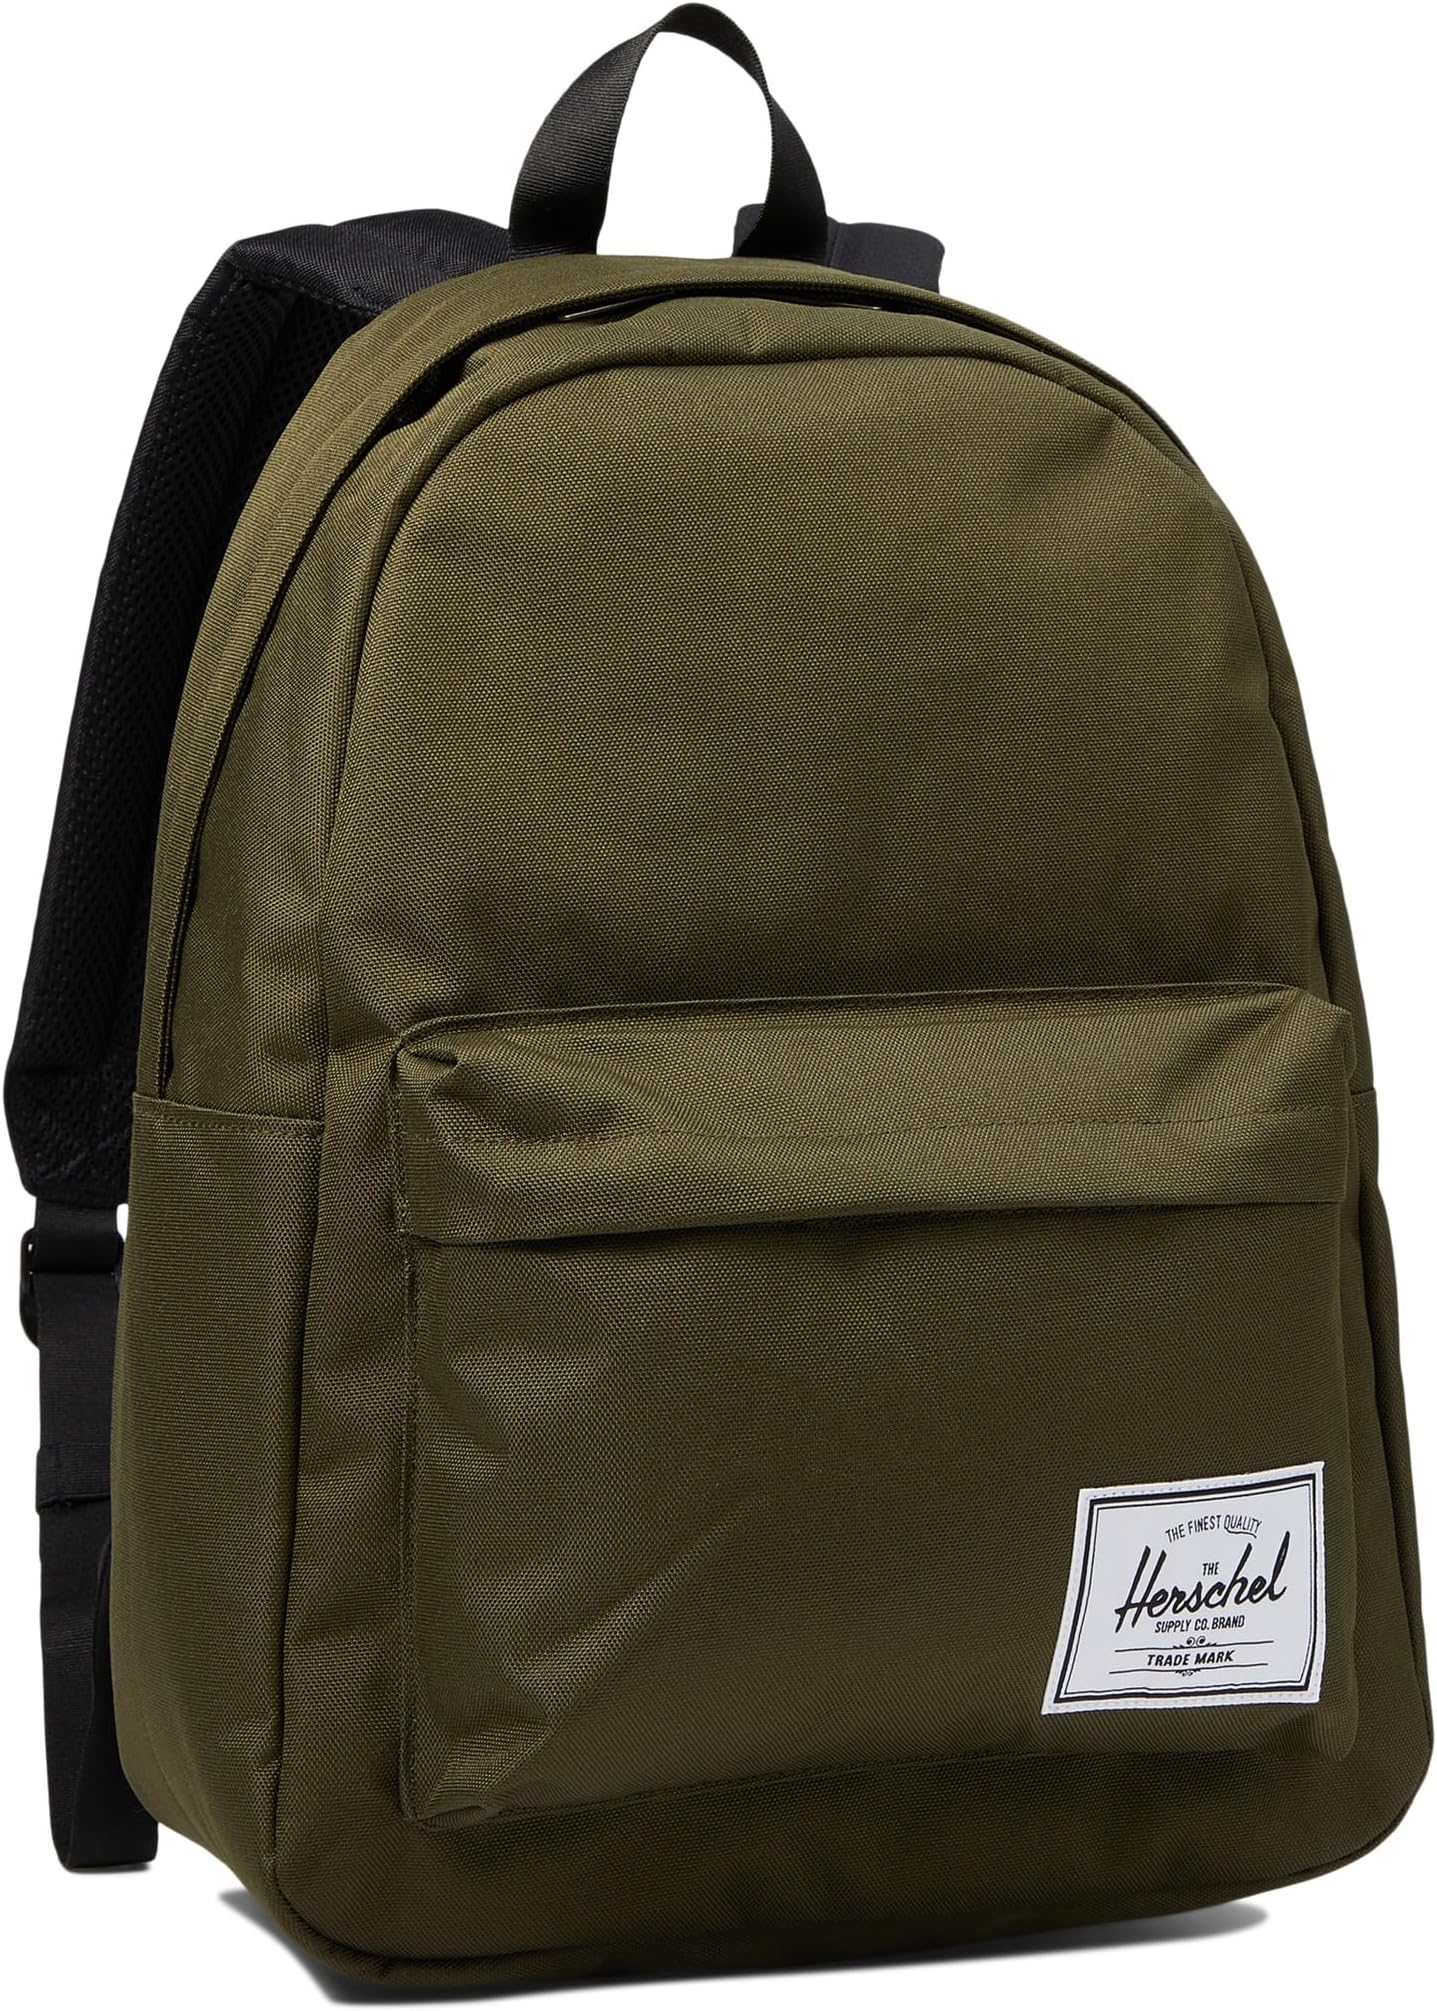 сумка heritage crossbody herschel supply co цвет ivy green Рюкзак Classic Backpack Herschel Supply Co., цвет Ivy Green